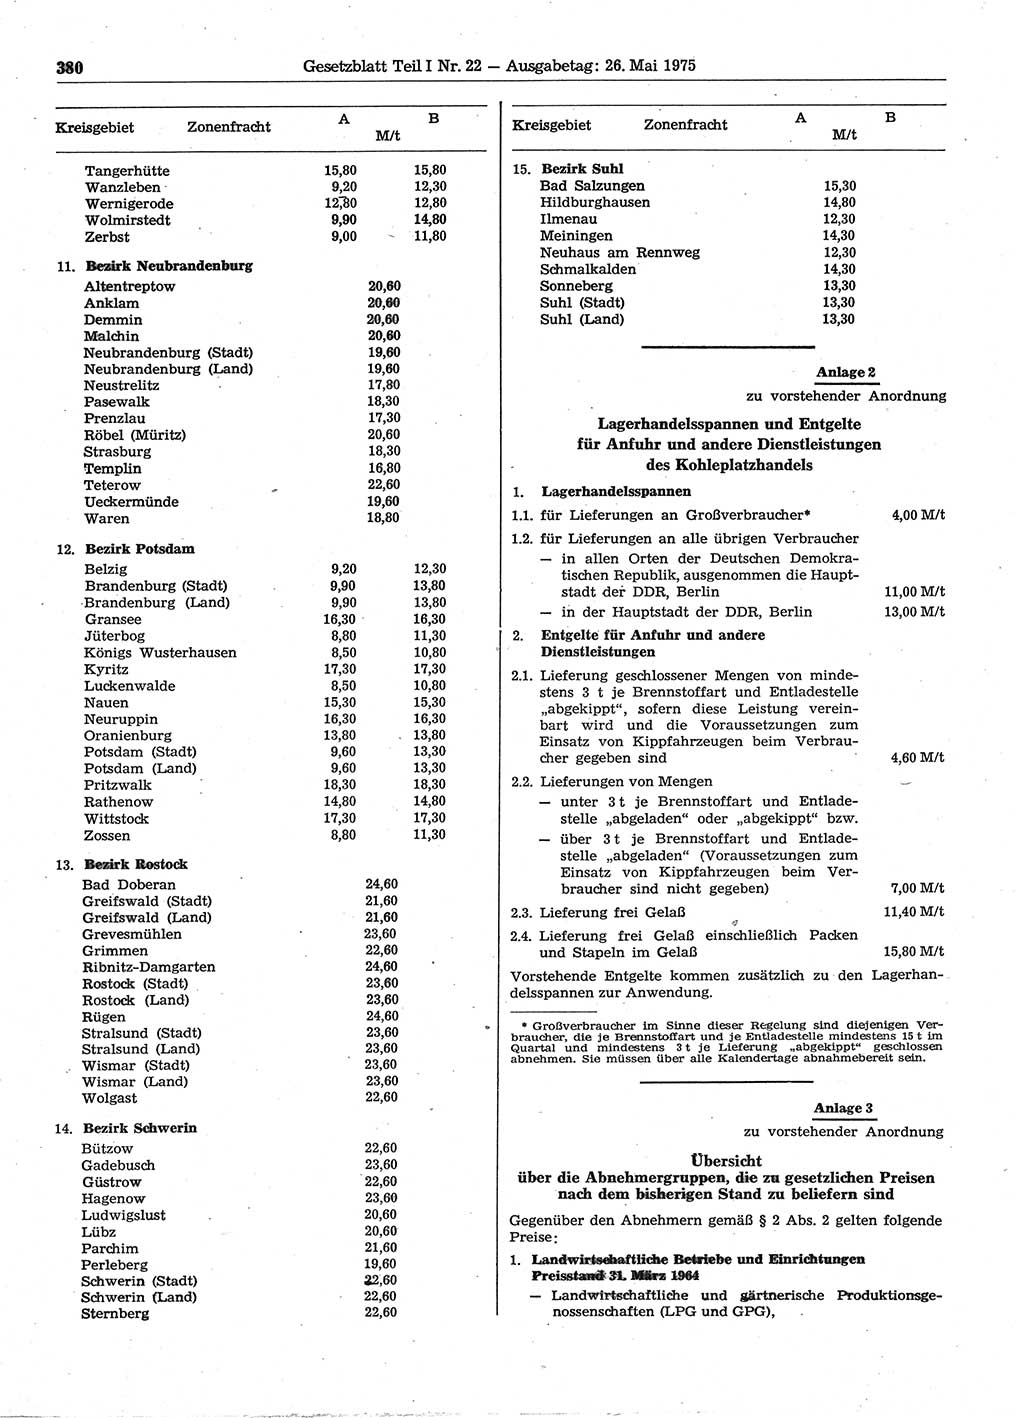 Gesetzblatt (GBl.) der Deutschen Demokratischen Republik (DDR) Teil Ⅰ 1975, Seite 380 (GBl. DDR Ⅰ 1975, S. 380)